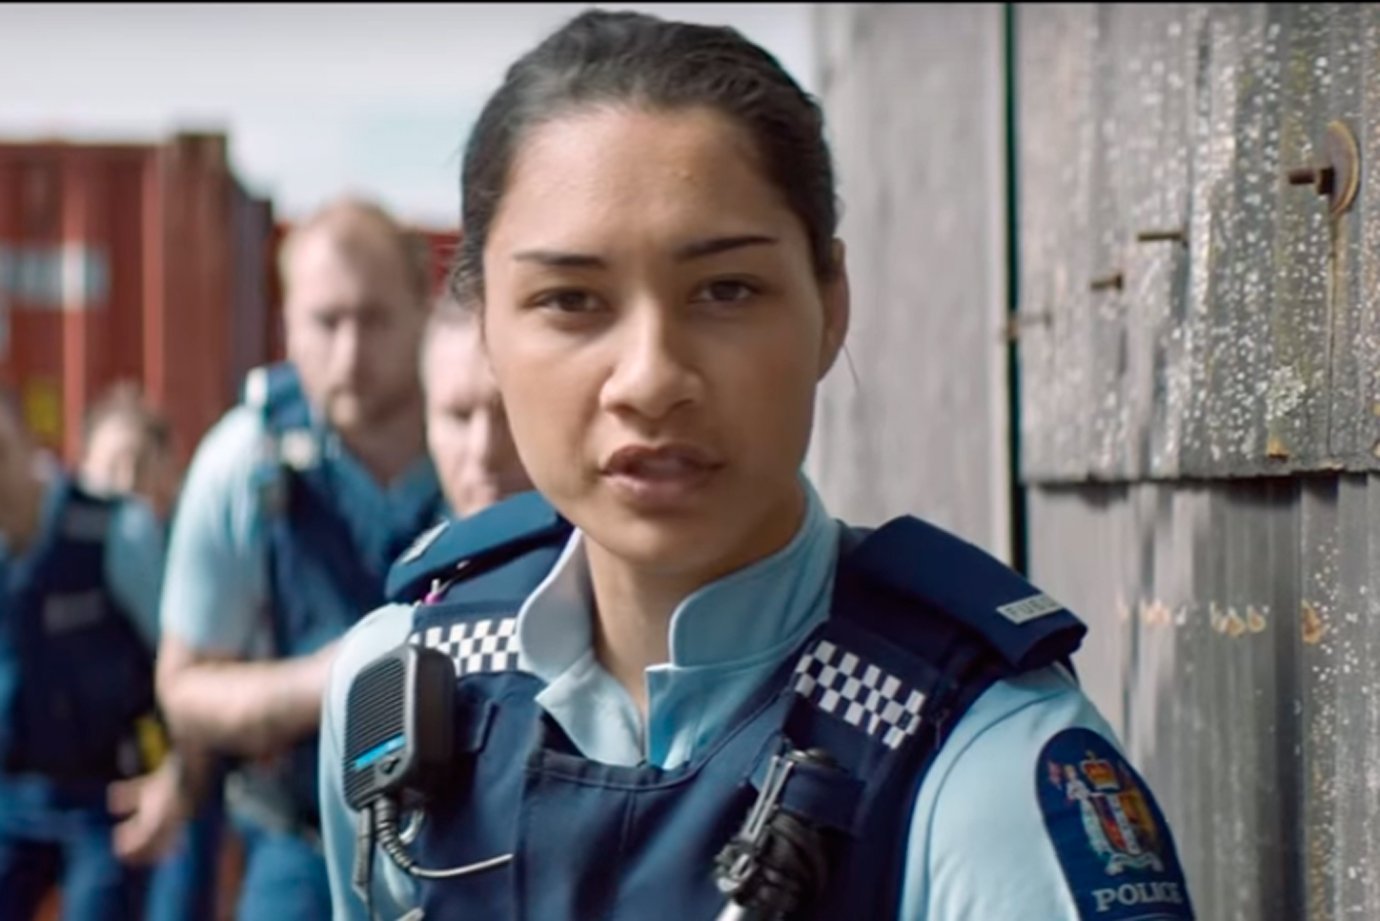 Polícia da Nova Zelândia: vídeo inusitado de recrutamento viraliza